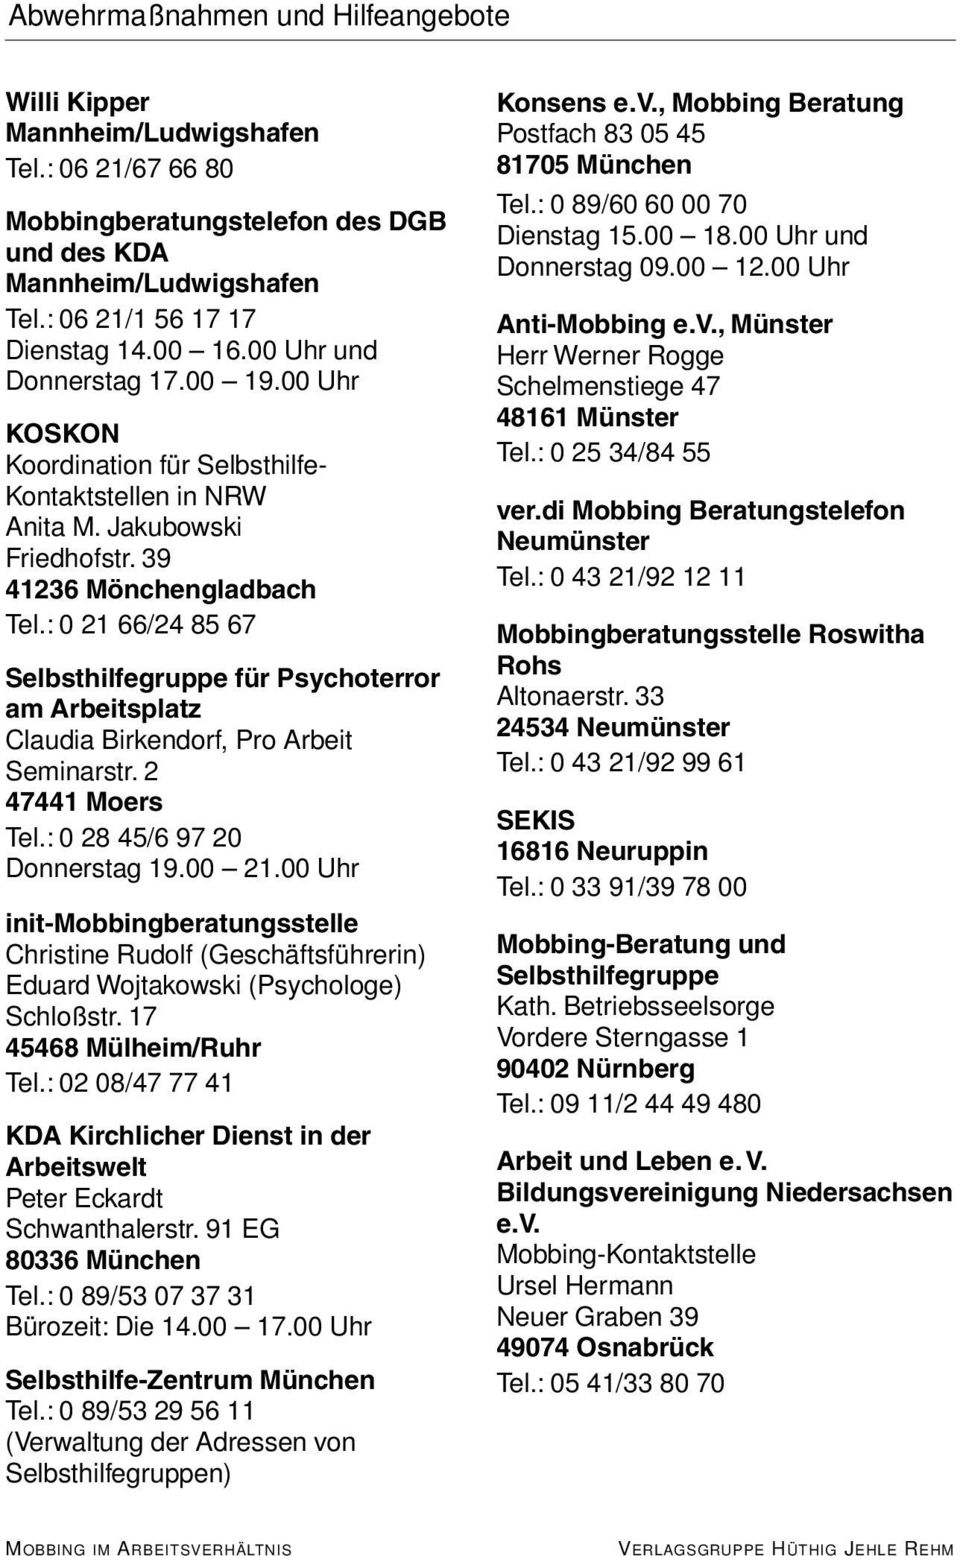 : 0 21 66/24 85 67 Selbsthilfegruppe für Psychoterror am Arbeitsplatz Claudia Birkendorf, Pro Arbeit Seminarstr. 2 47441 Moers Tel.: 0 28 45/6 97 20 Donnerstag 19.00 21.